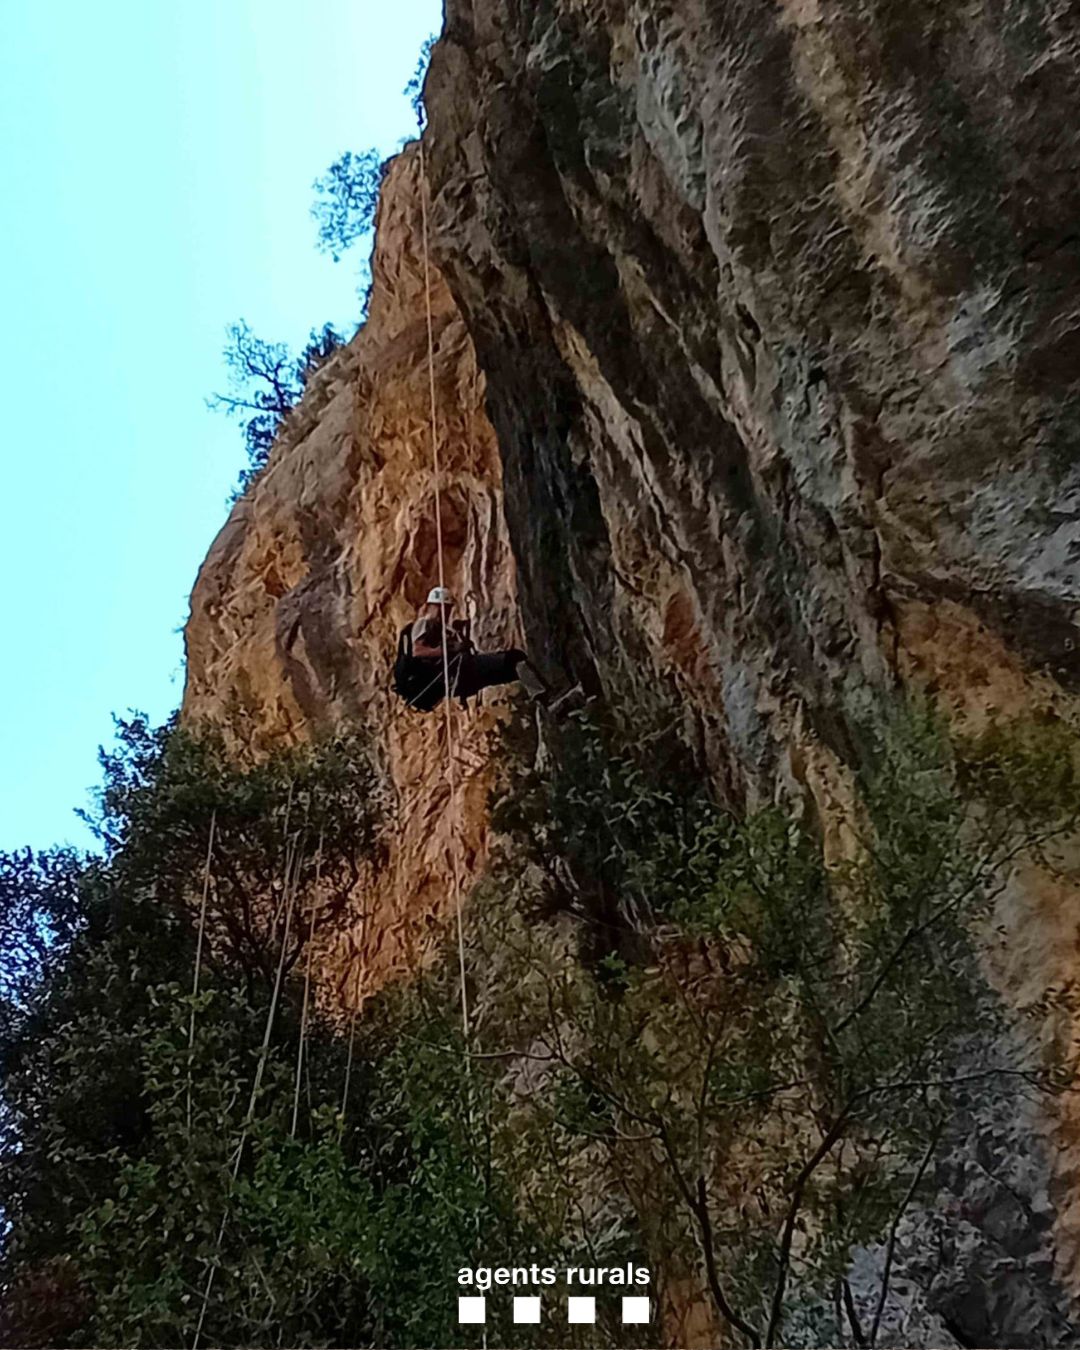 Agents Rurals han identificat un nou niu de trencalòs entre 3 vies d'escalada no autoritzades dins l'Espai d'Interès Nacional Collegats-Queralt i Reserva Nacional de Caça de Boumort